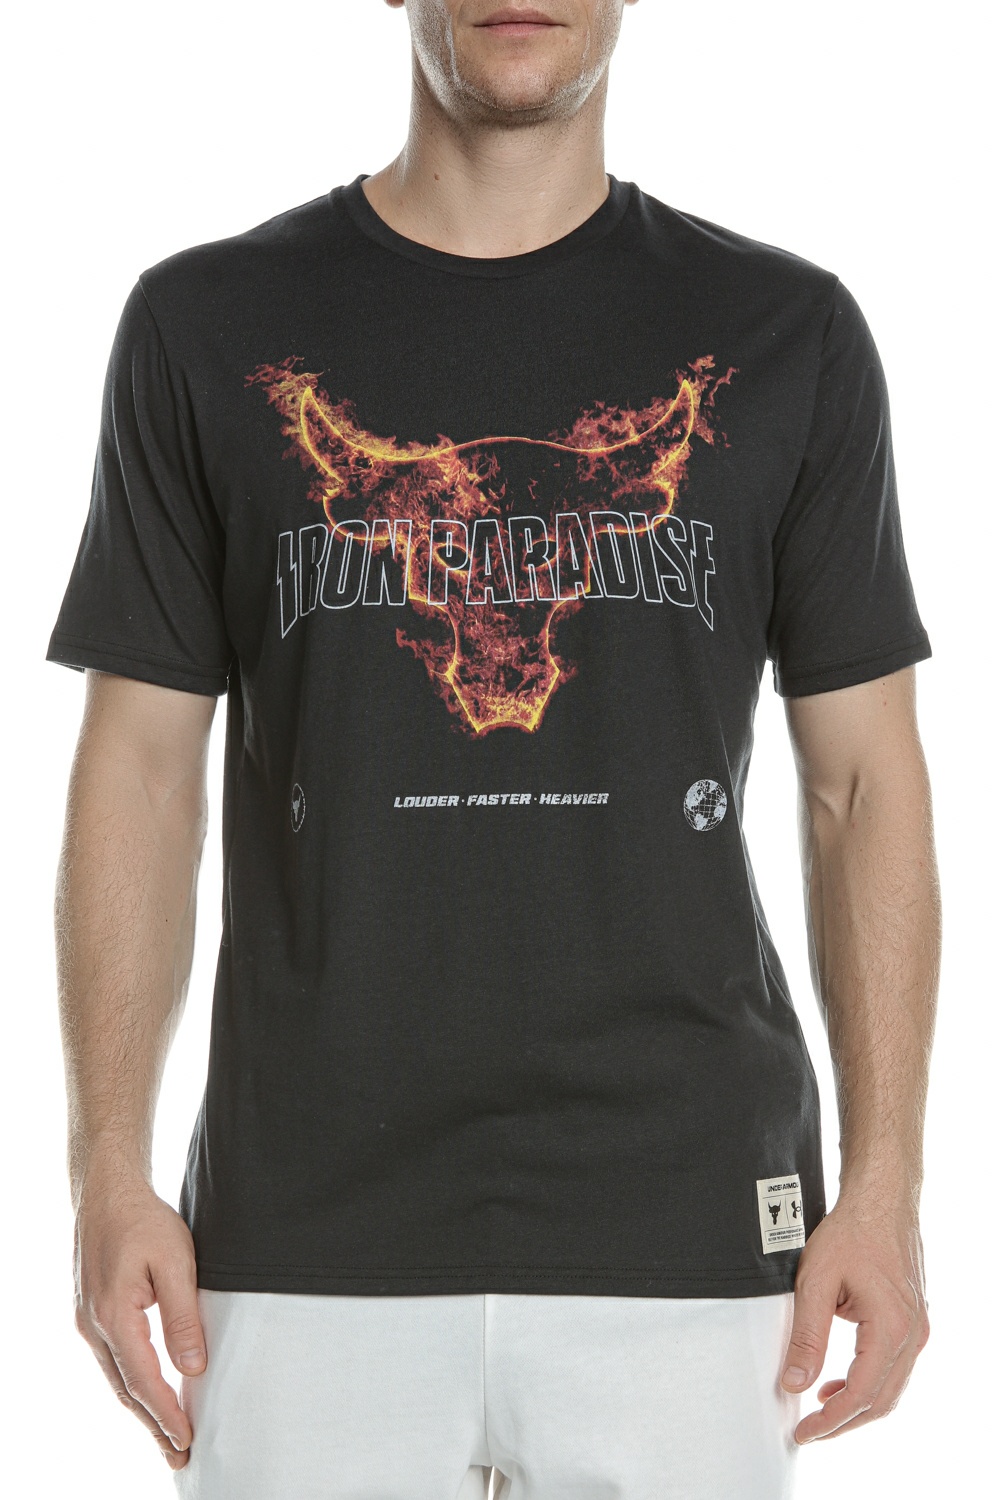 Ανδρικά/Ρούχα/Αθλητικά/T-shirt UNDER ARMOUR - Ανδρικό t-shirt UNDER ARMOUR Project Rock Fire SS μαύρο